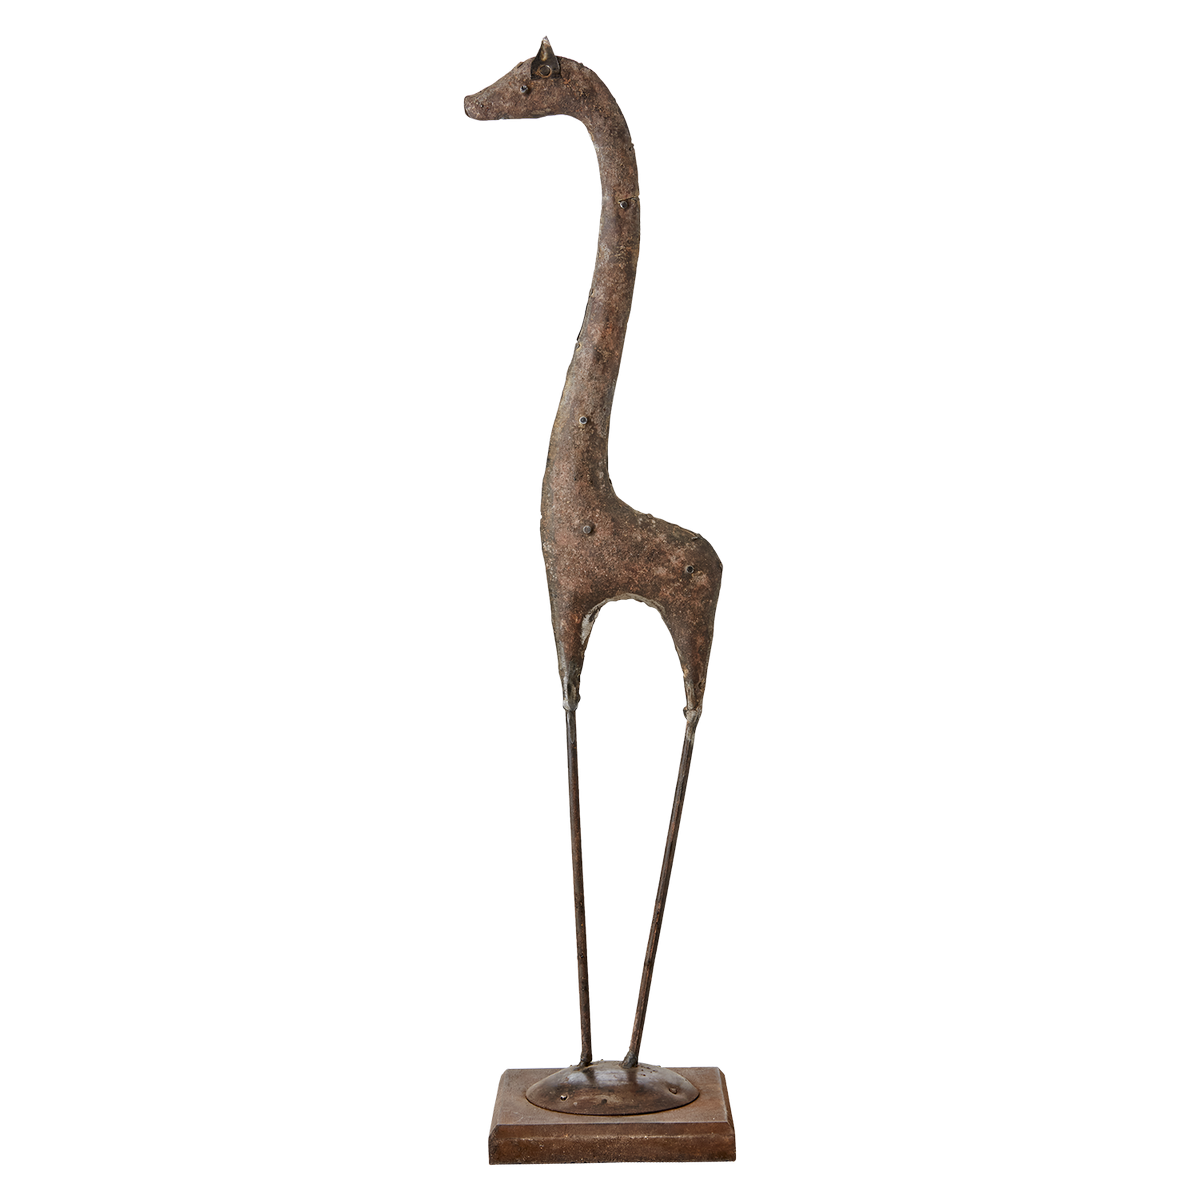 Justine, la statue girafe (collection Figaro)